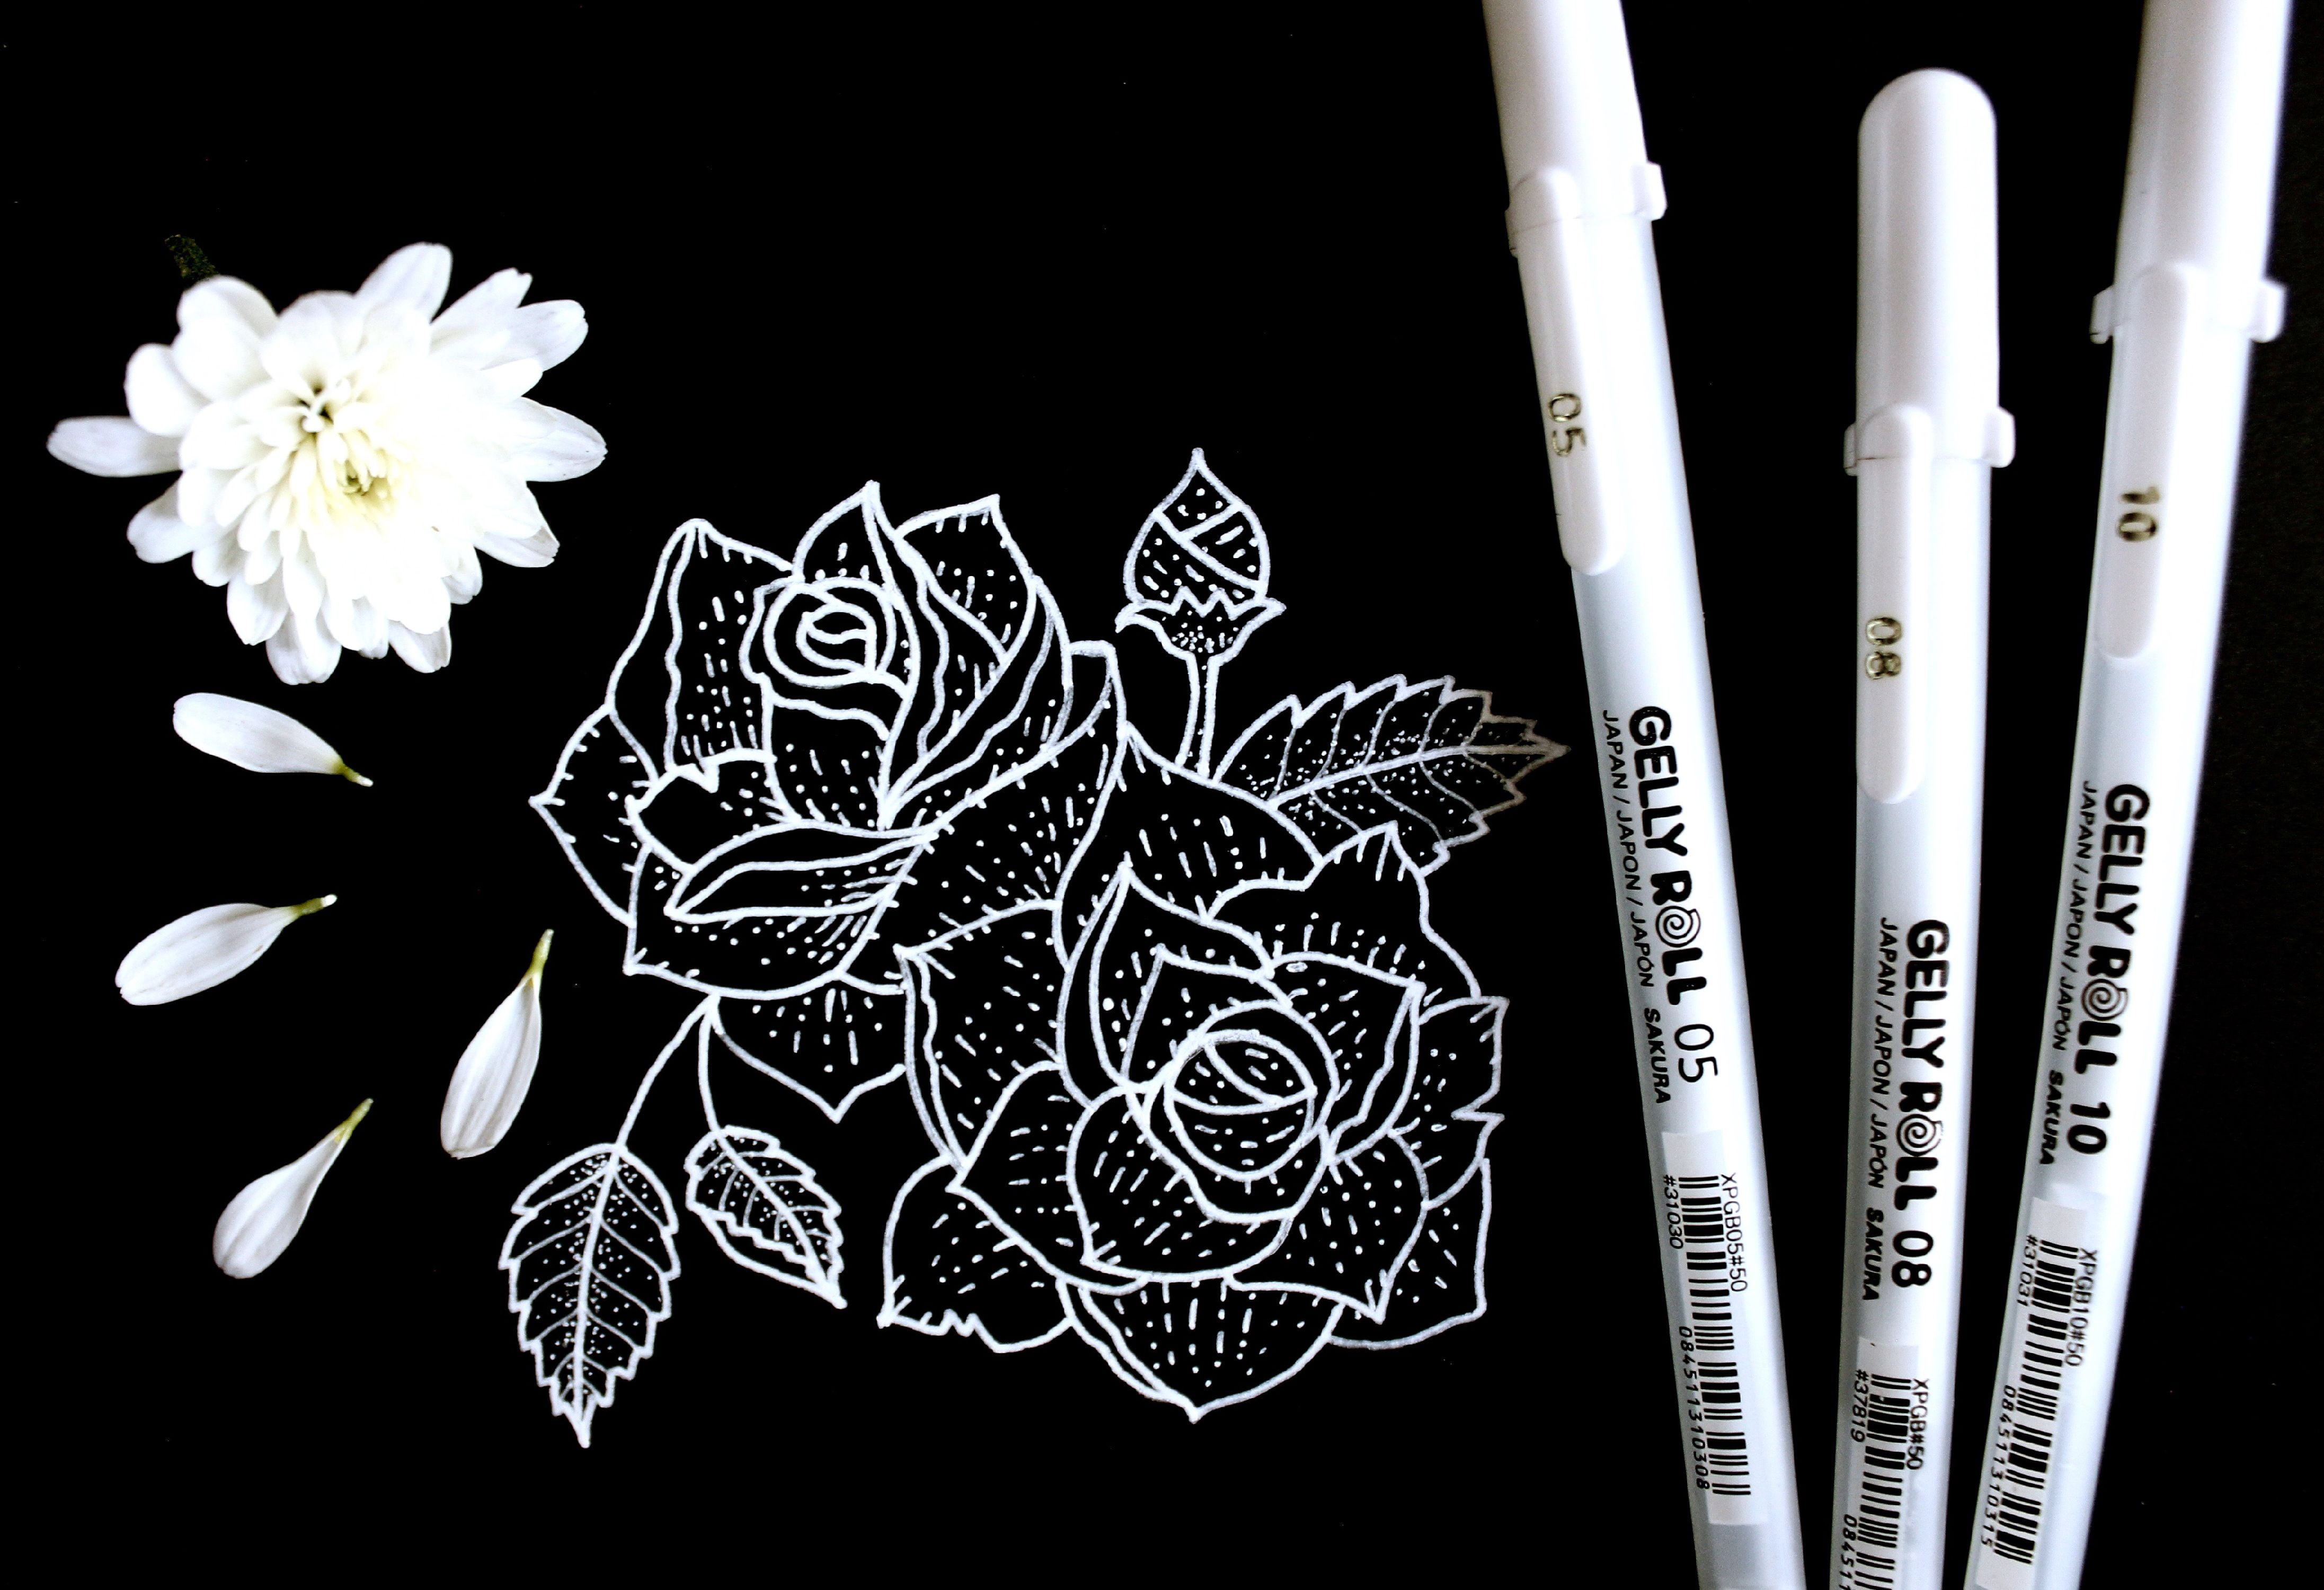 Gellyroll Sakura 10 White Gel Pen Made in Japan White Ink, Drawing Pens 